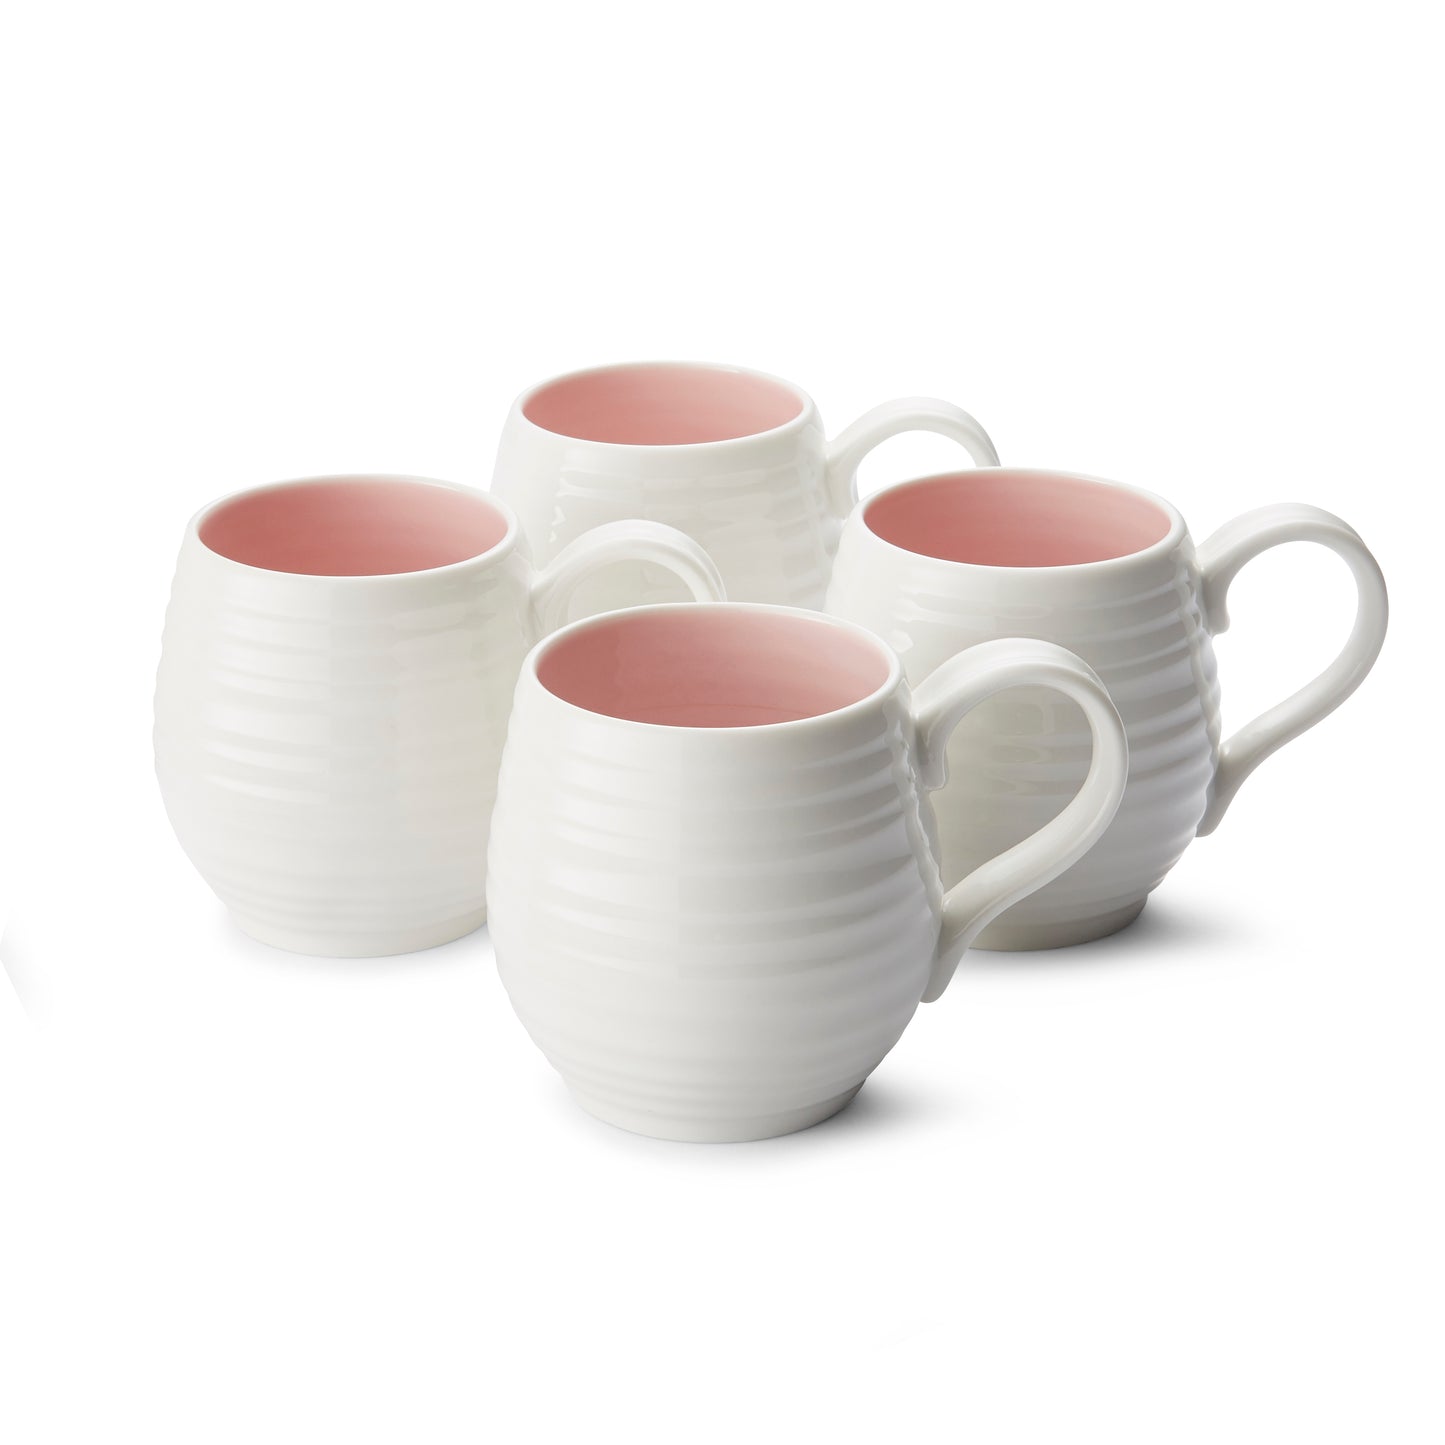 Sophie Conran For Portmeirion Honey Pot Pink 10oz Barrel Mug Set of 4